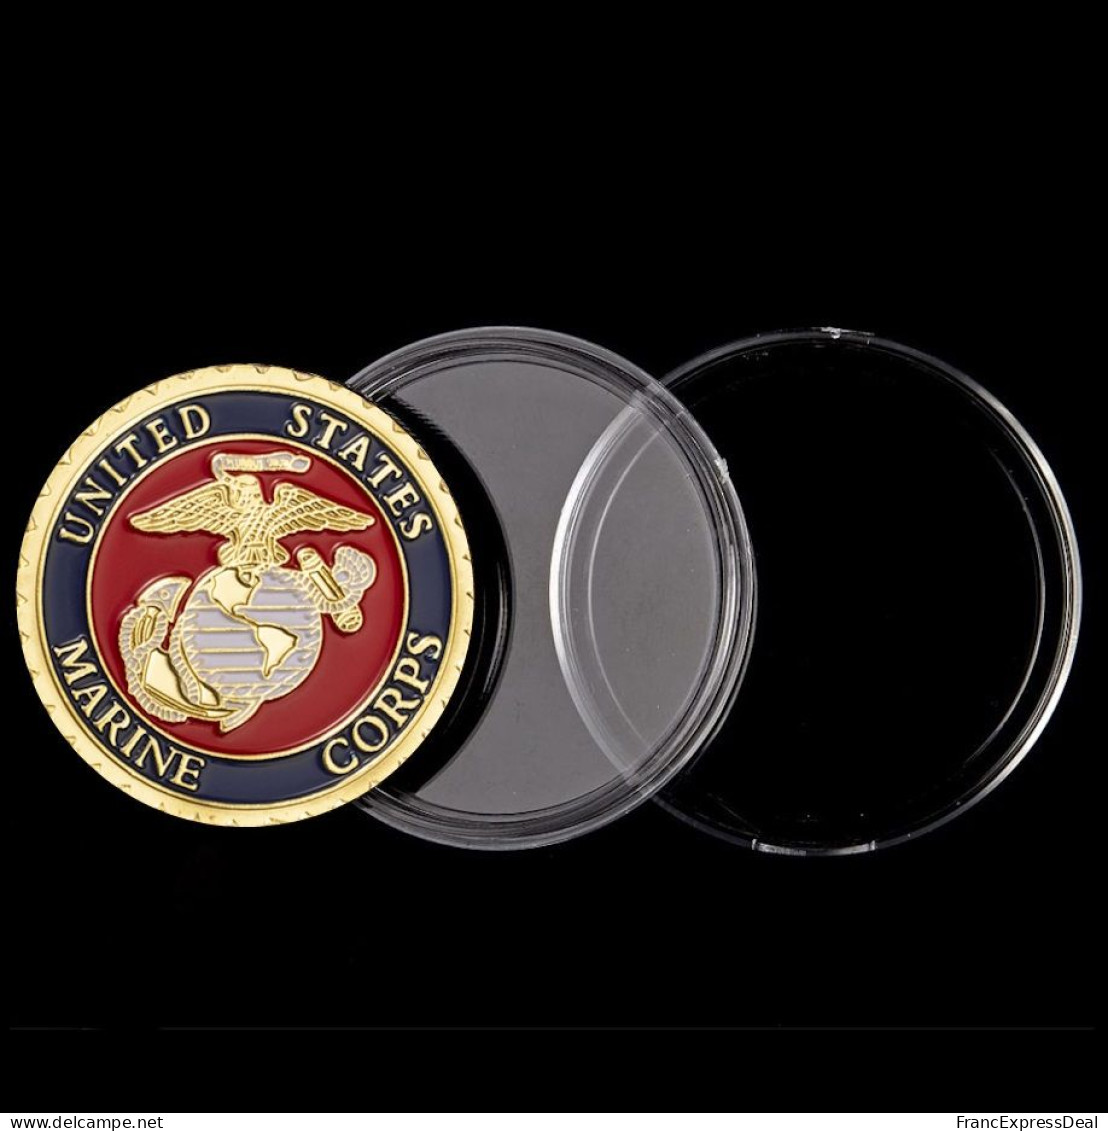 Pièce Médaille NEUVE plaquée Or - Etats-Unis US Marine Corps Guerre du Vietnam (Réf 1)